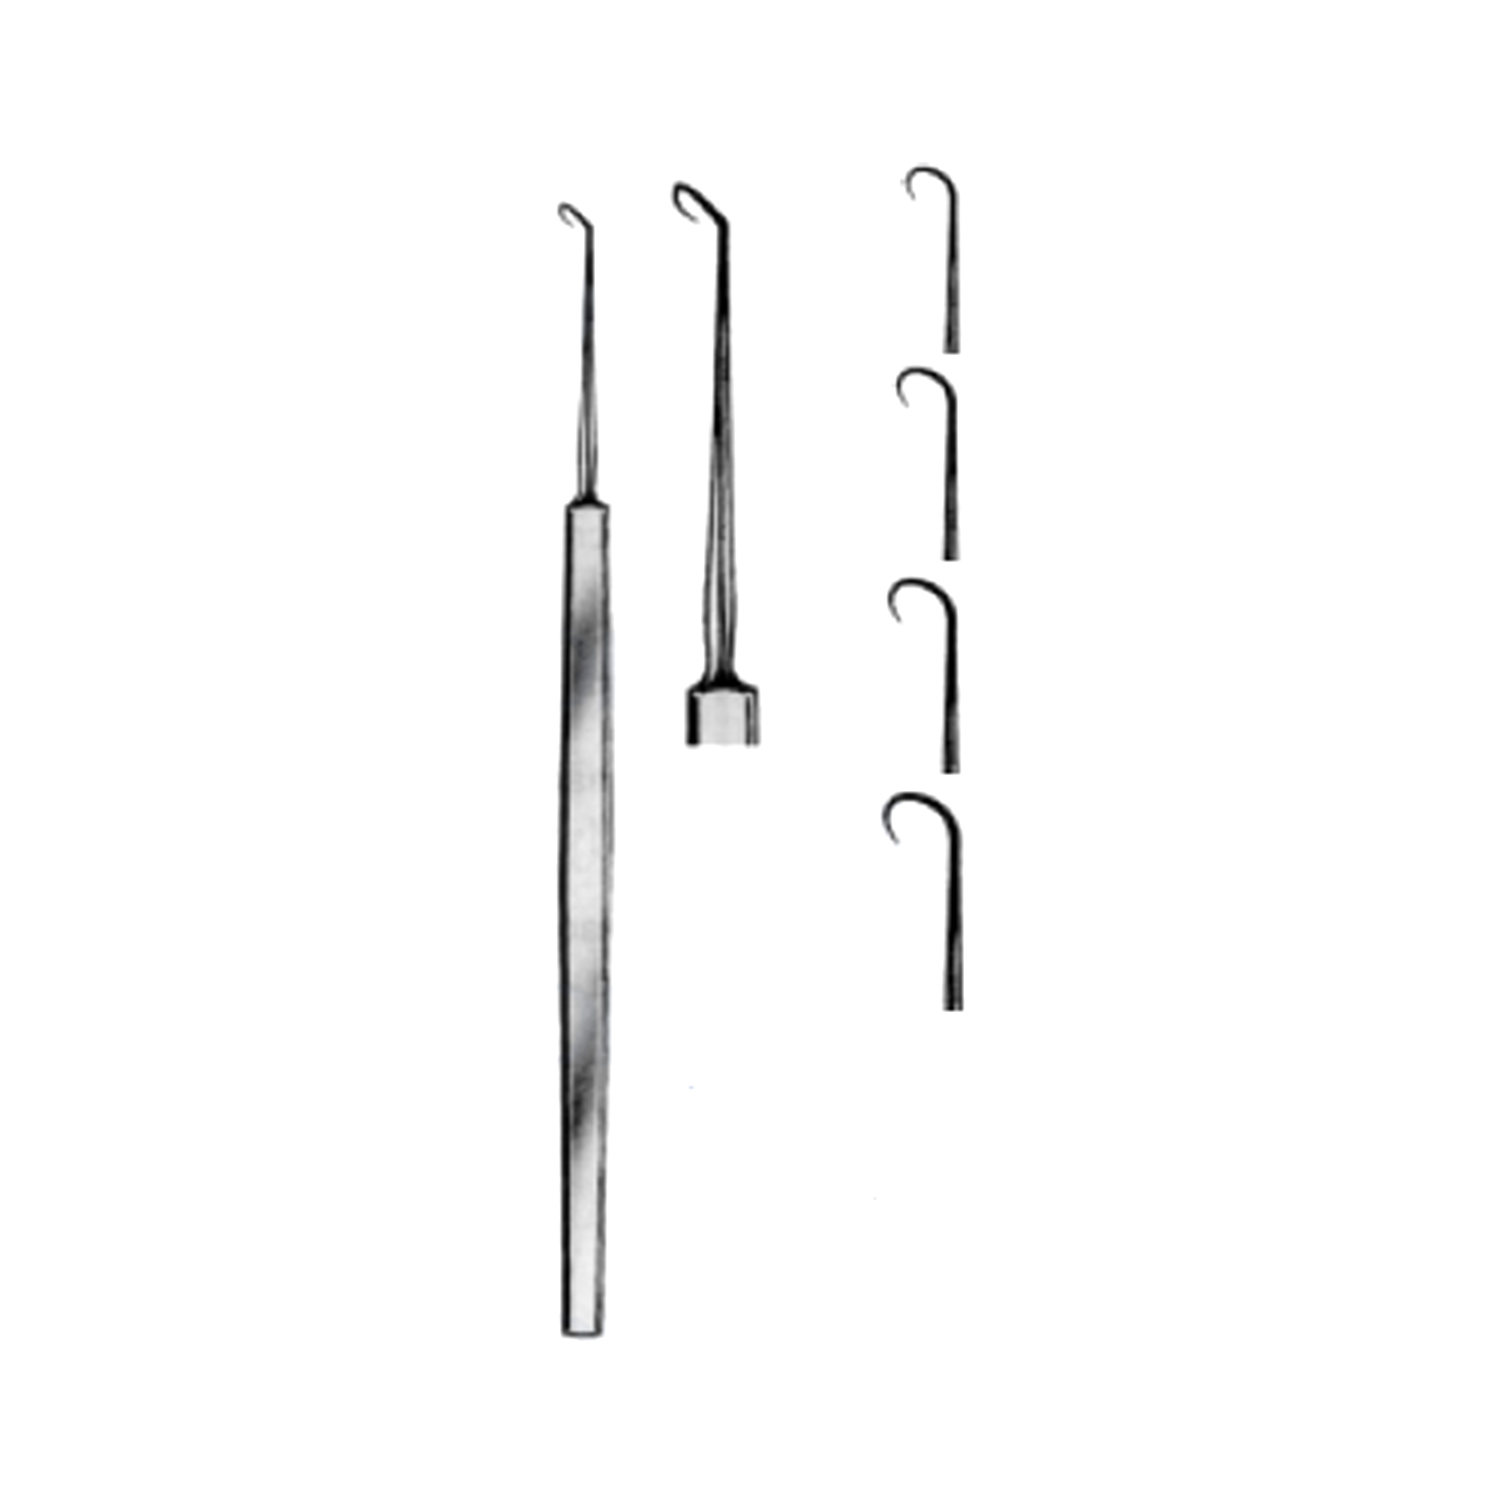 Marina Medical Phlebectomy Hook Set - Sizes 1-4